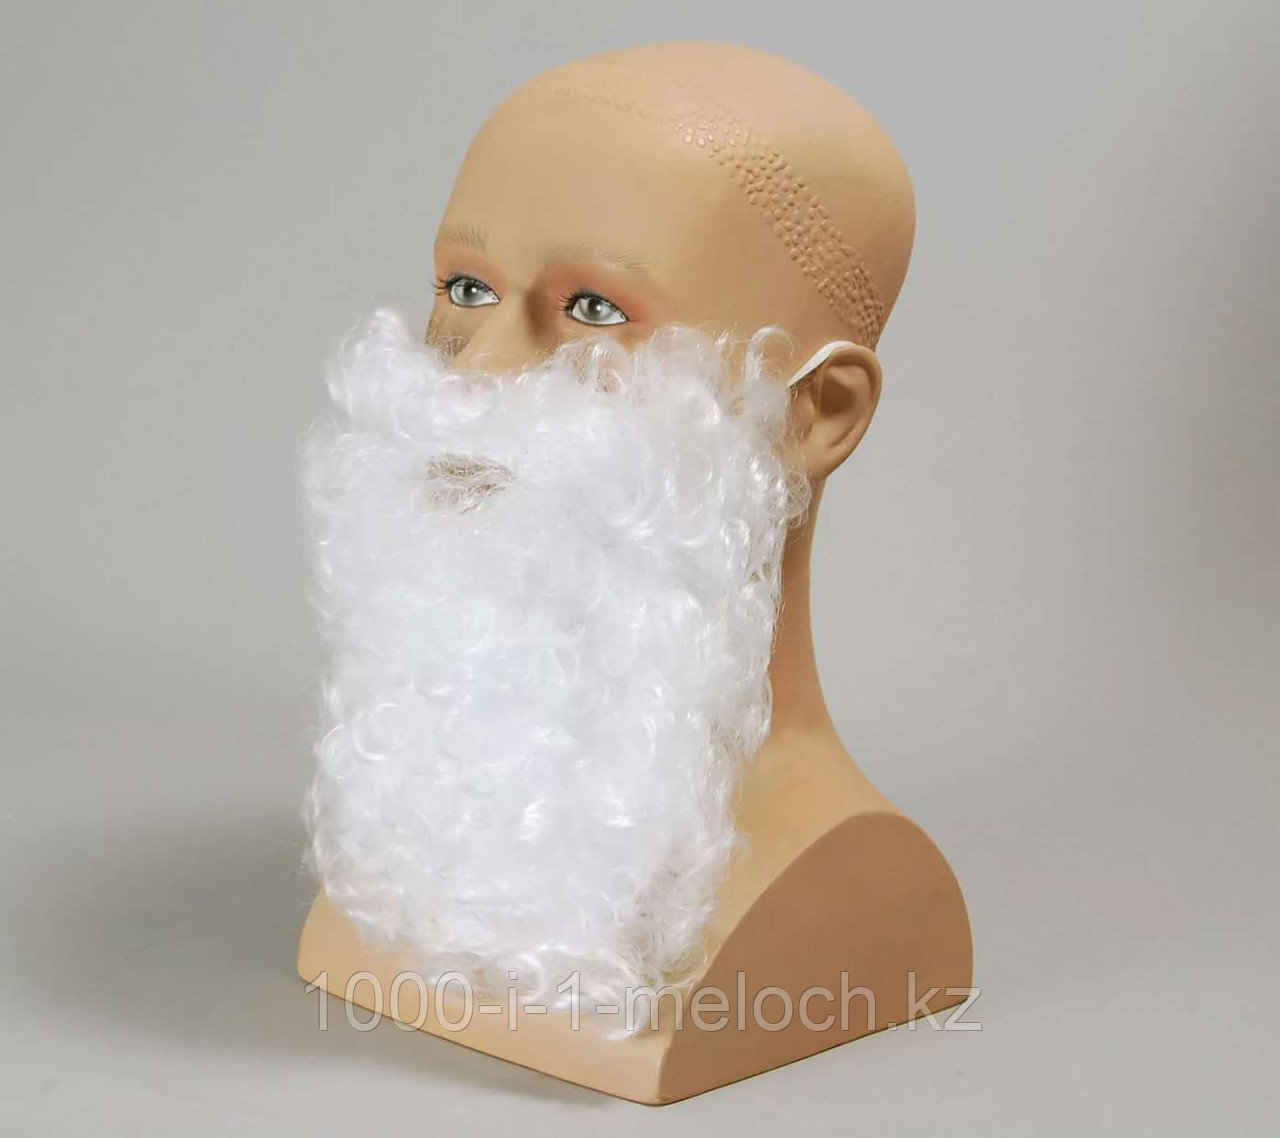 Борода дед мороза